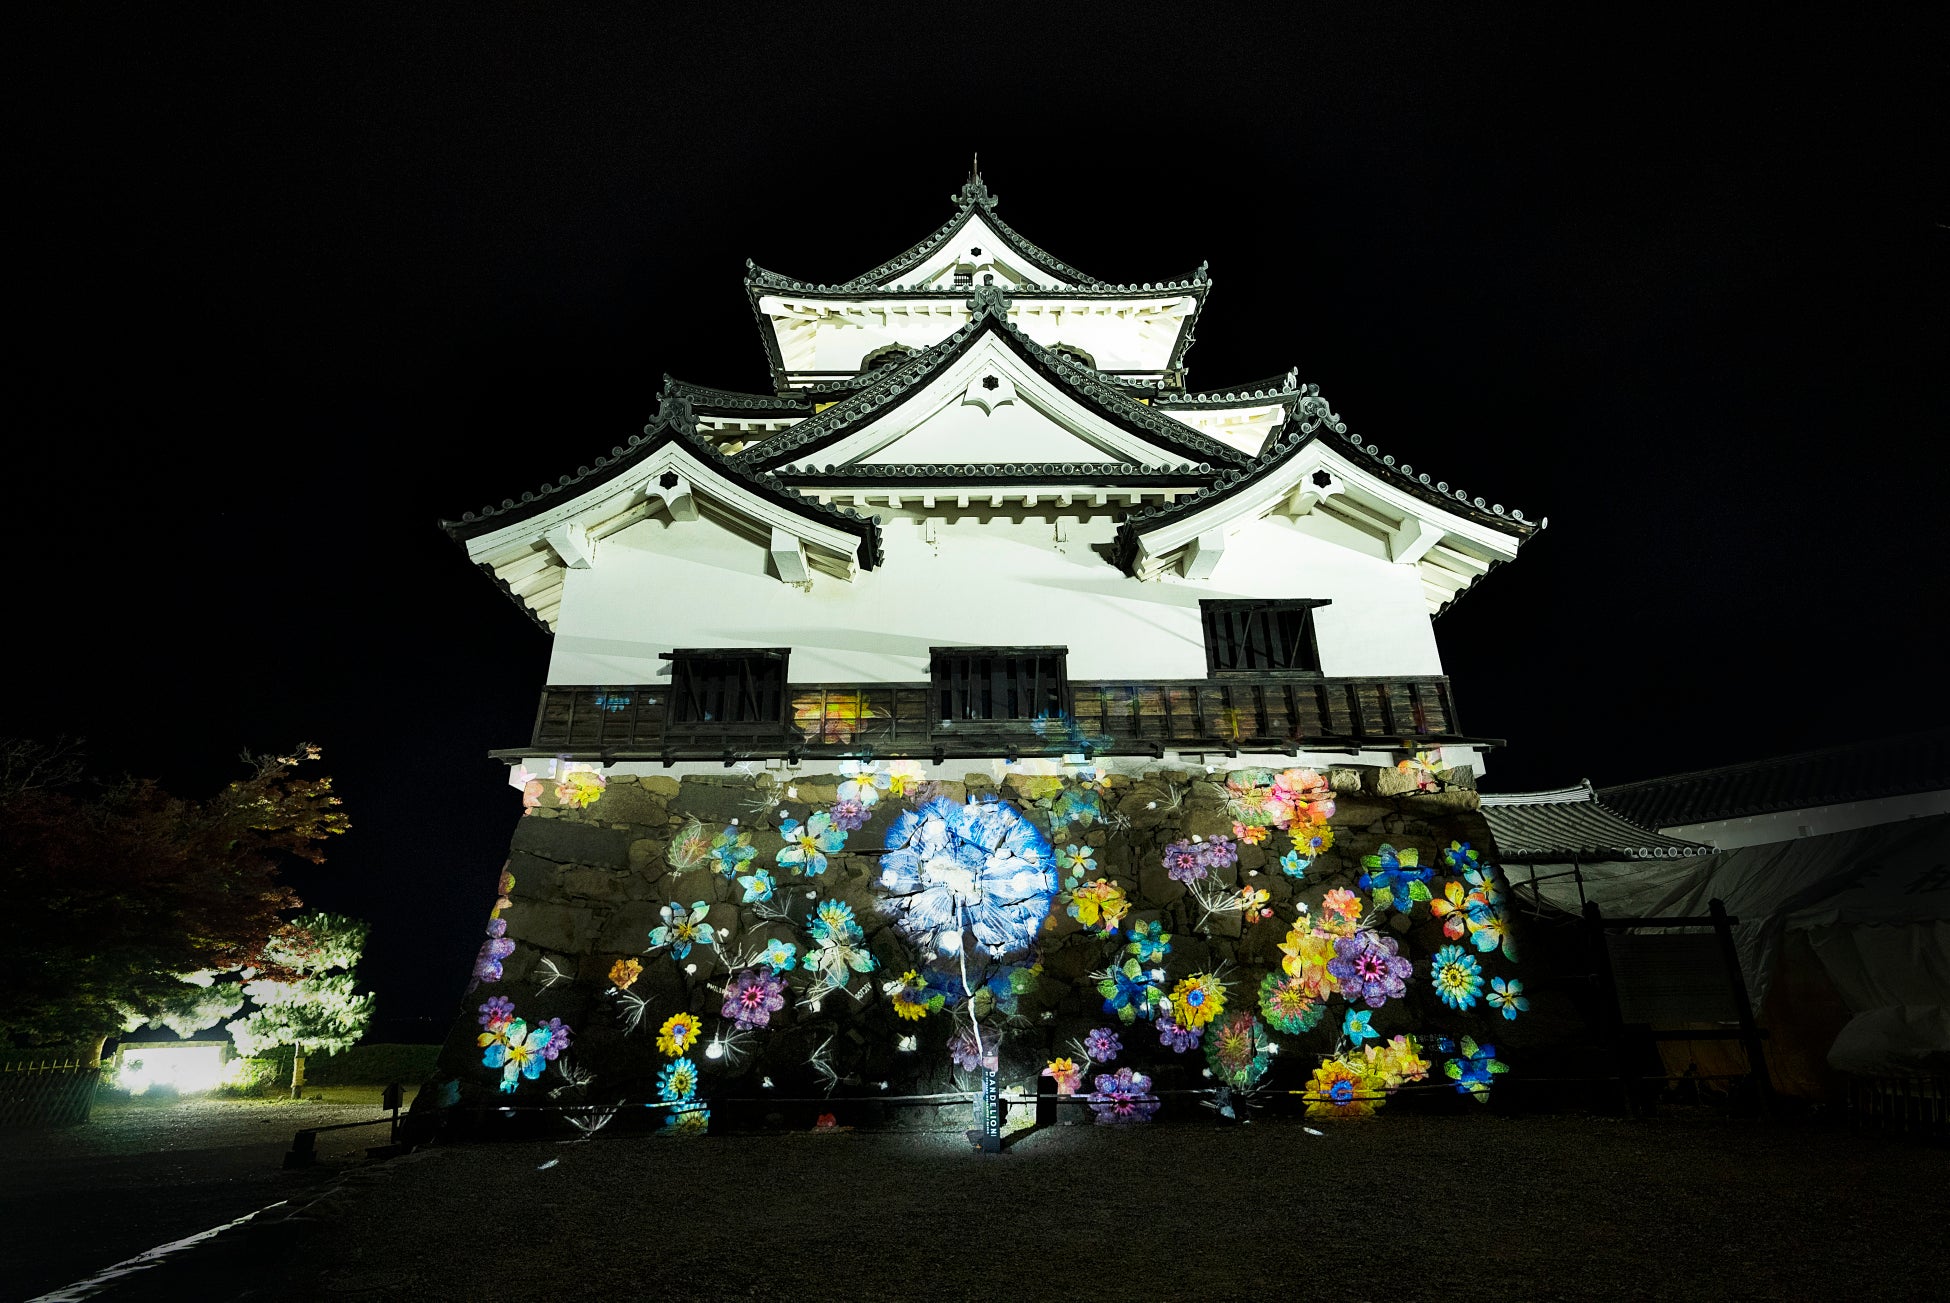 国宝・彦根城に、世界と繋がるアートプロジェクト『DANDELION PROJECT』